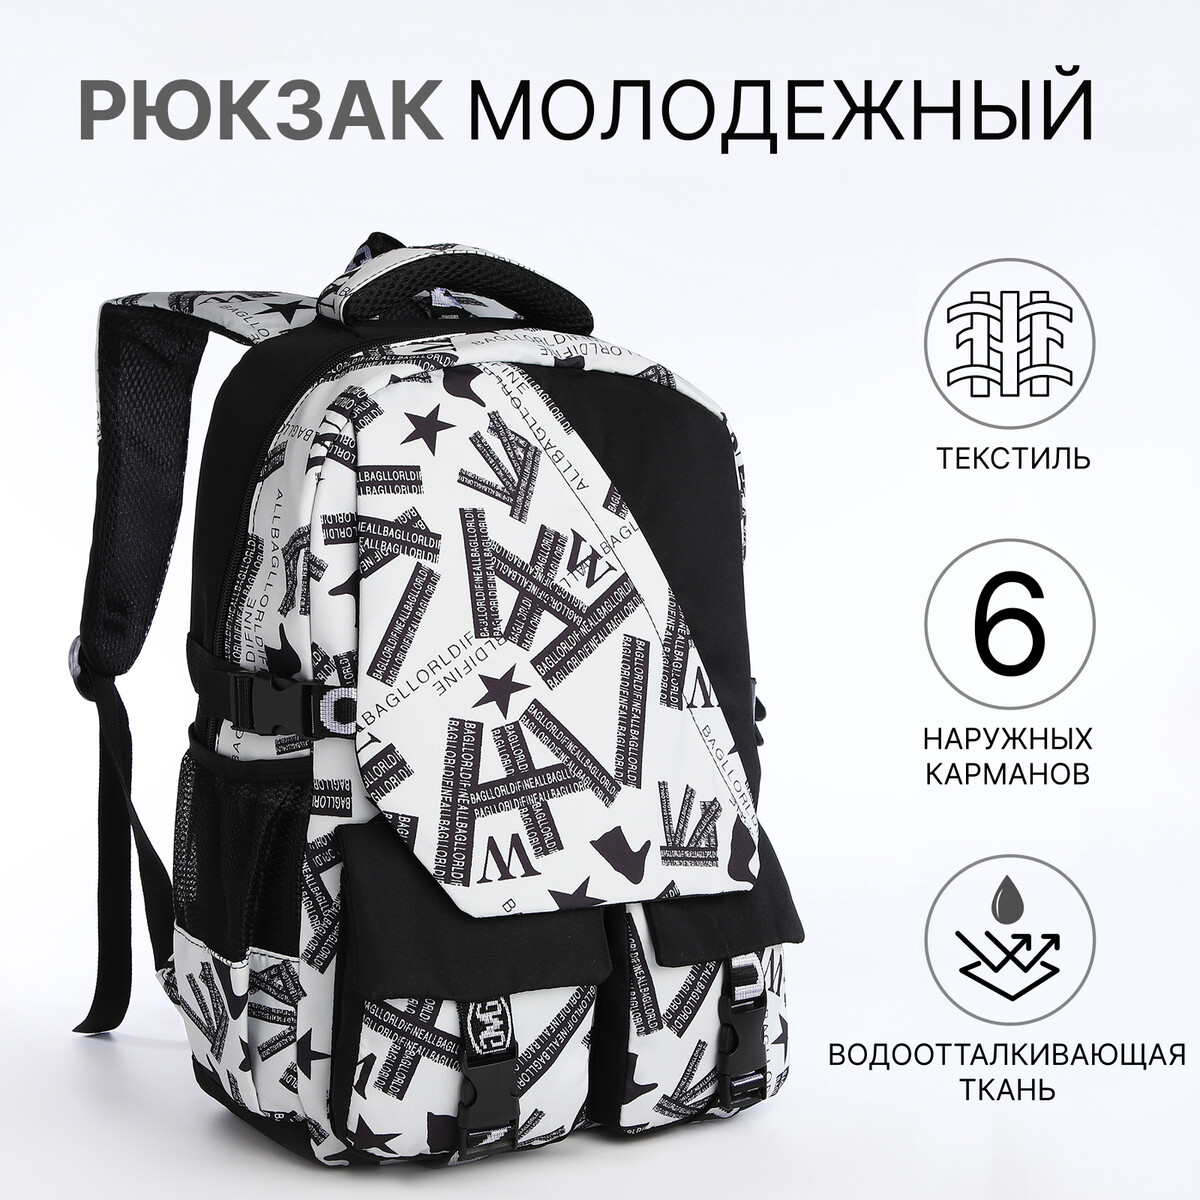 Рюкзак школьный на молнии, 5 карманов, цвет черный/серый